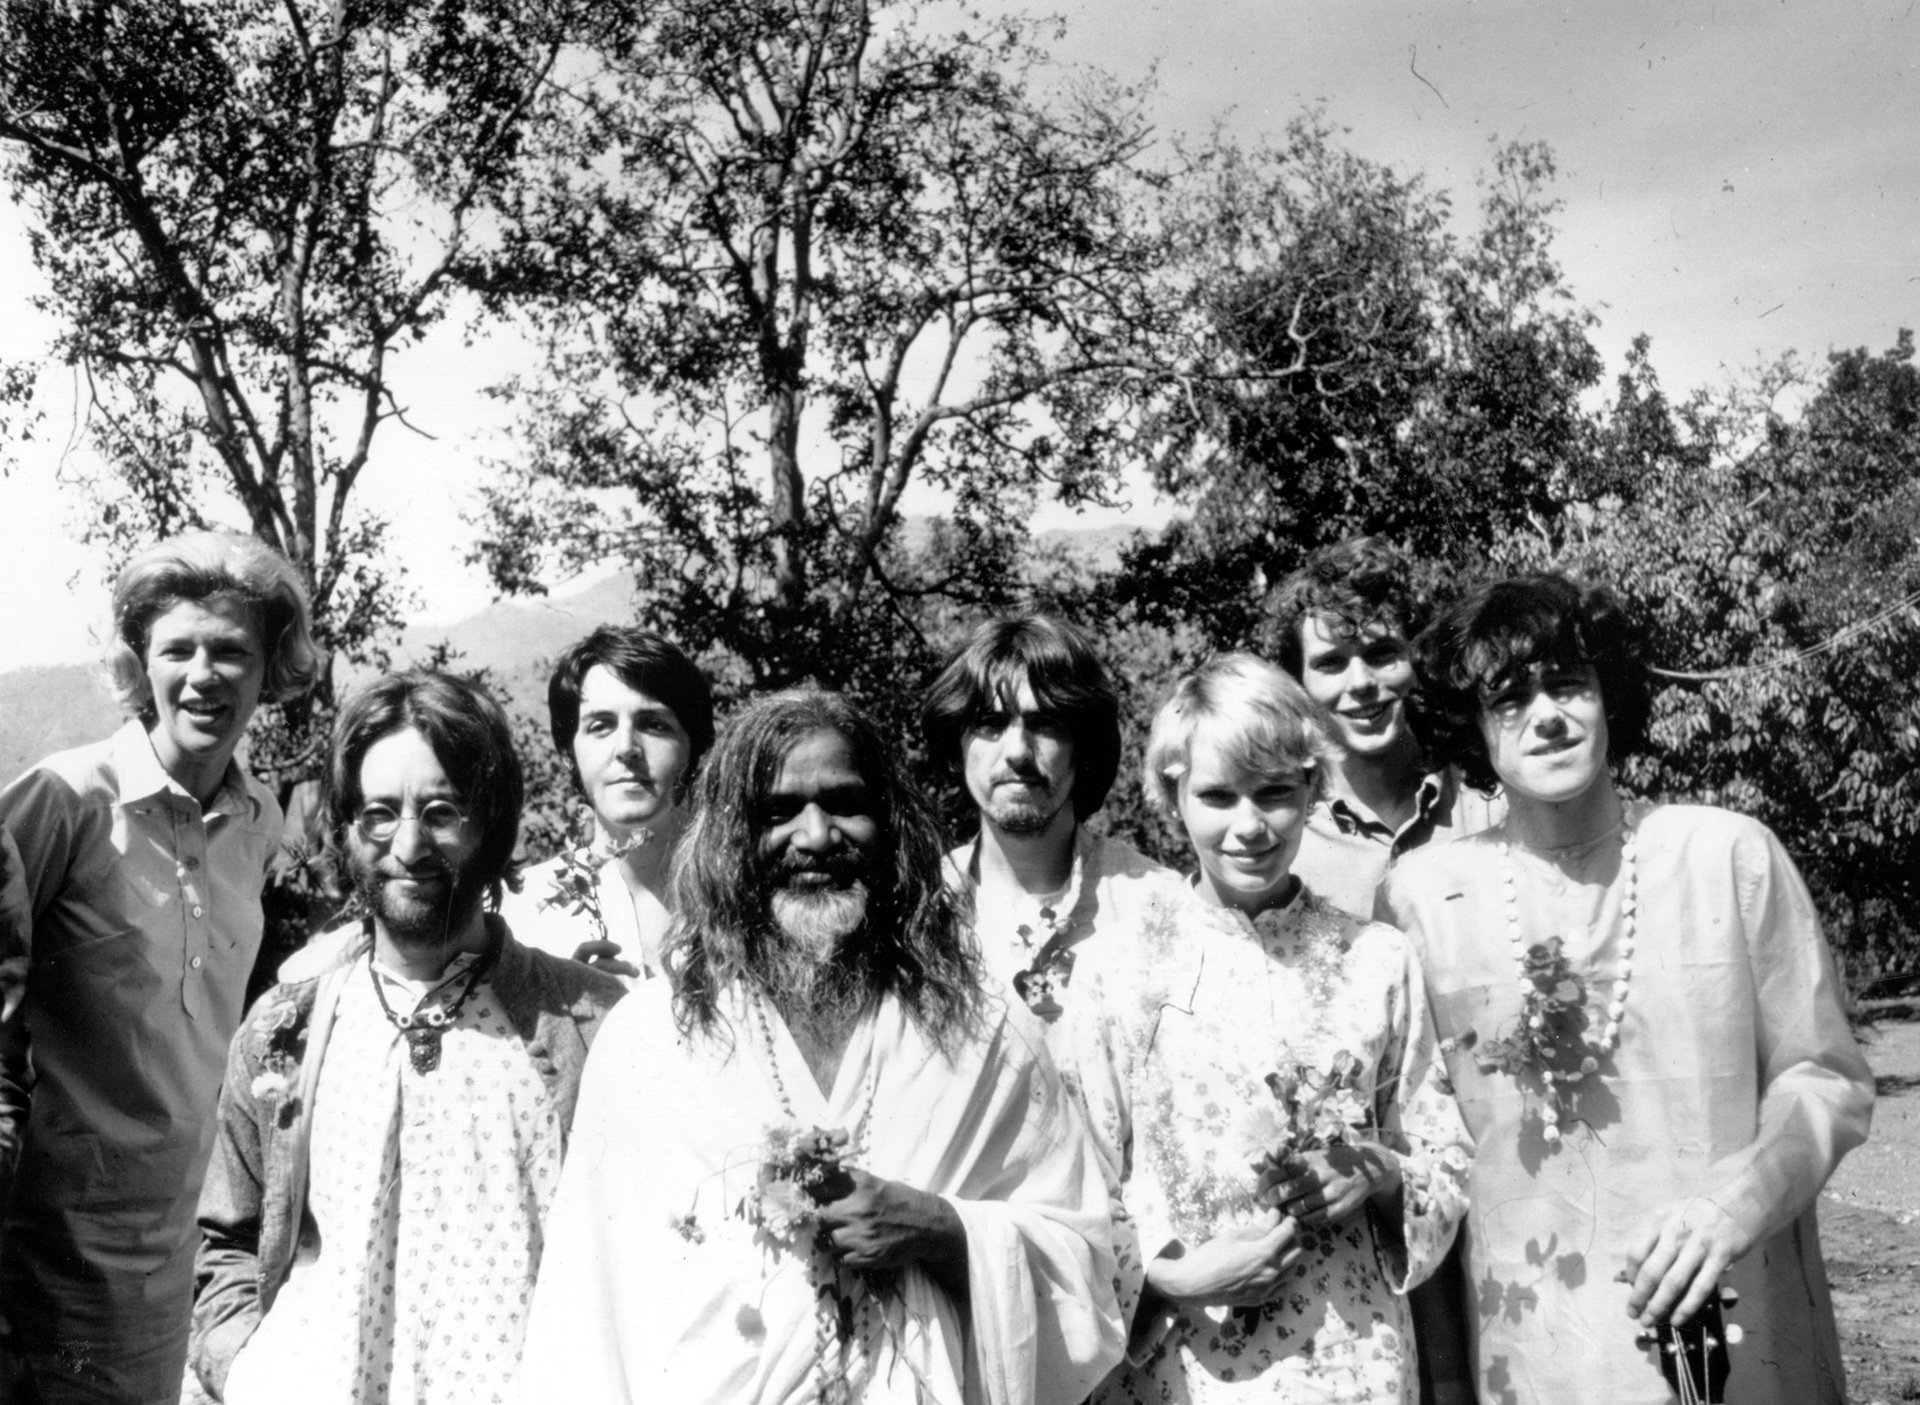 Maharishi Mahesh Yogi con John, George, Paul, Mia Farrow y Donovan, entre otros de sus discípulos (Keystone Features/Hulton Archive/Getty Images)